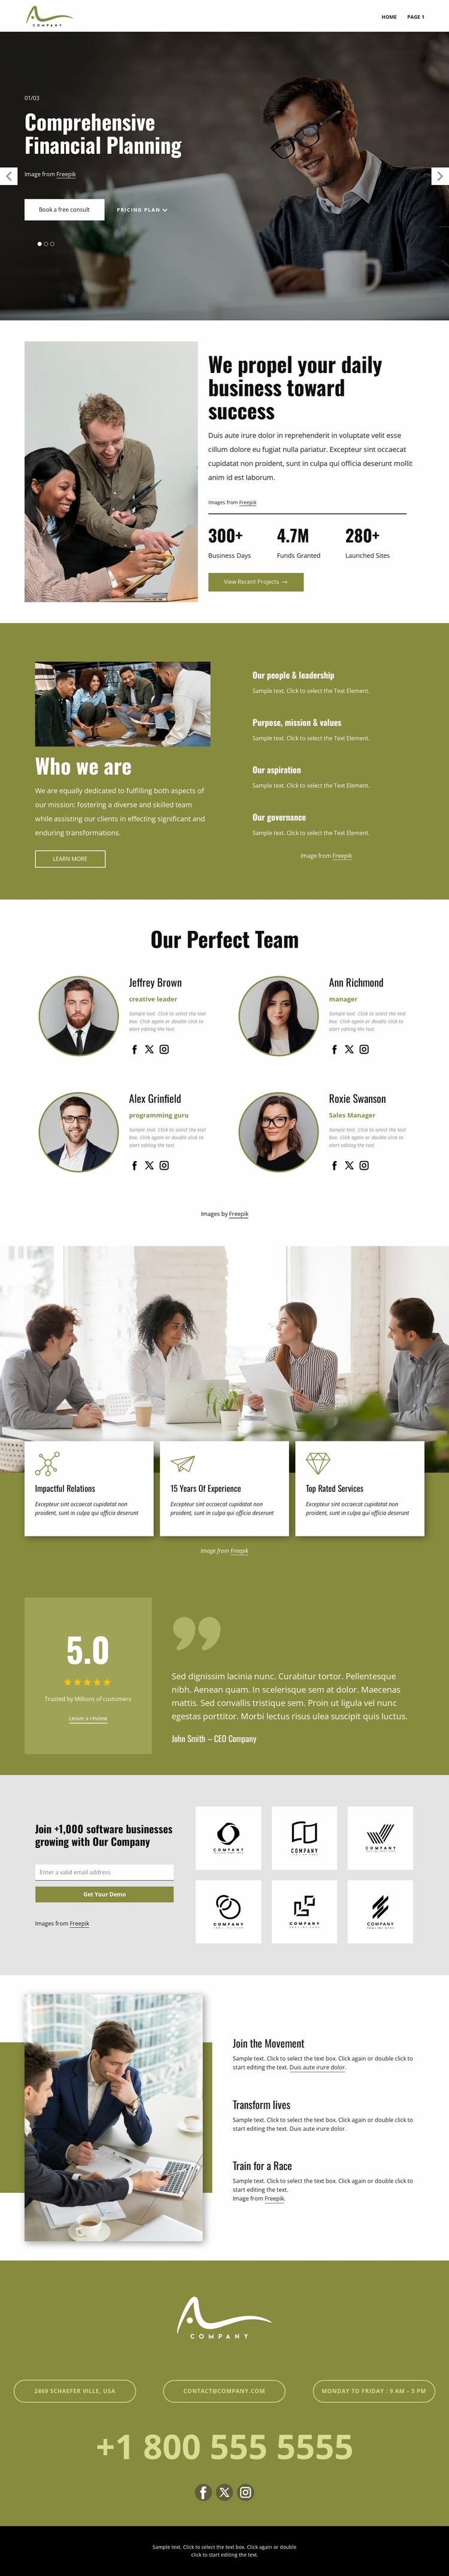 Strategic consulting solutions Website Design